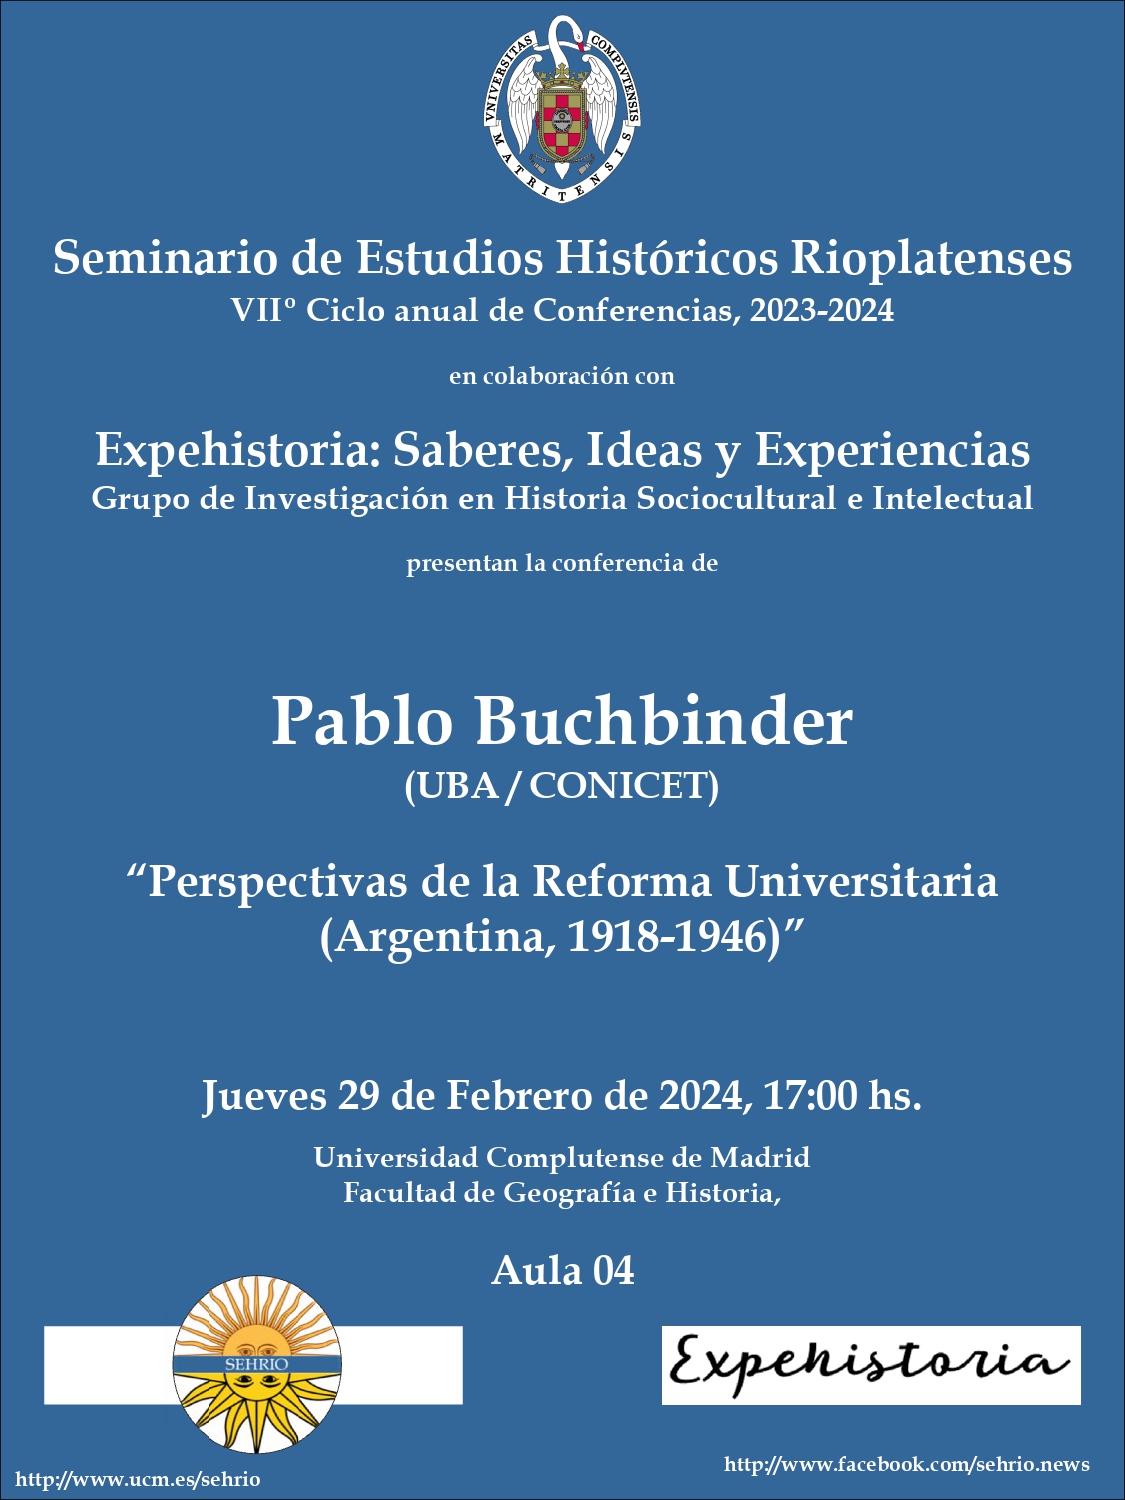 Conferencia Pablo Buchbinder